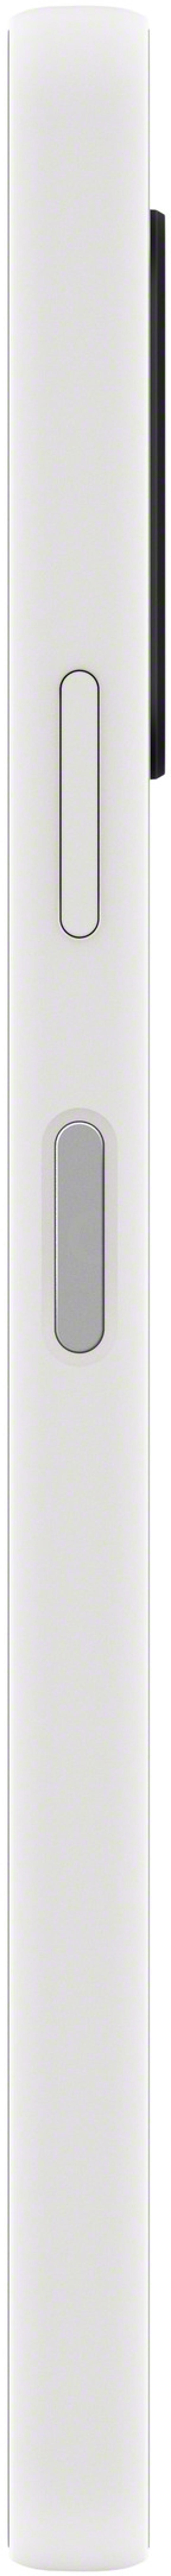 Sony XPERIA 10 V 128GB Kaksois-SIM Valkoinen